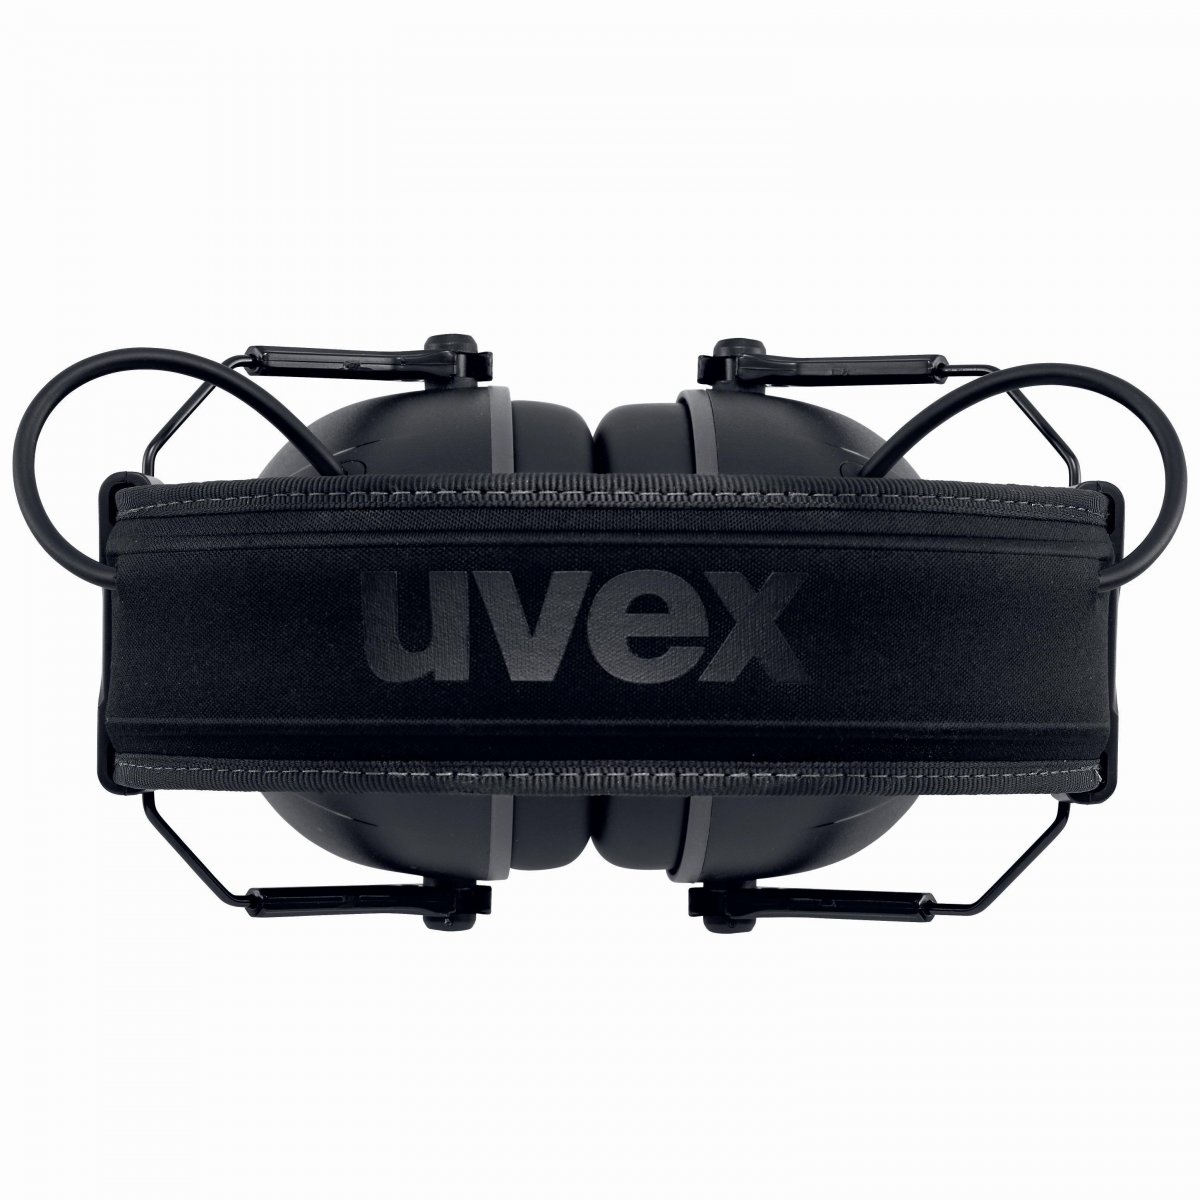 uvex aXess one : le nouveau casque antibruit intelligent avec Bluethooth® 5.0